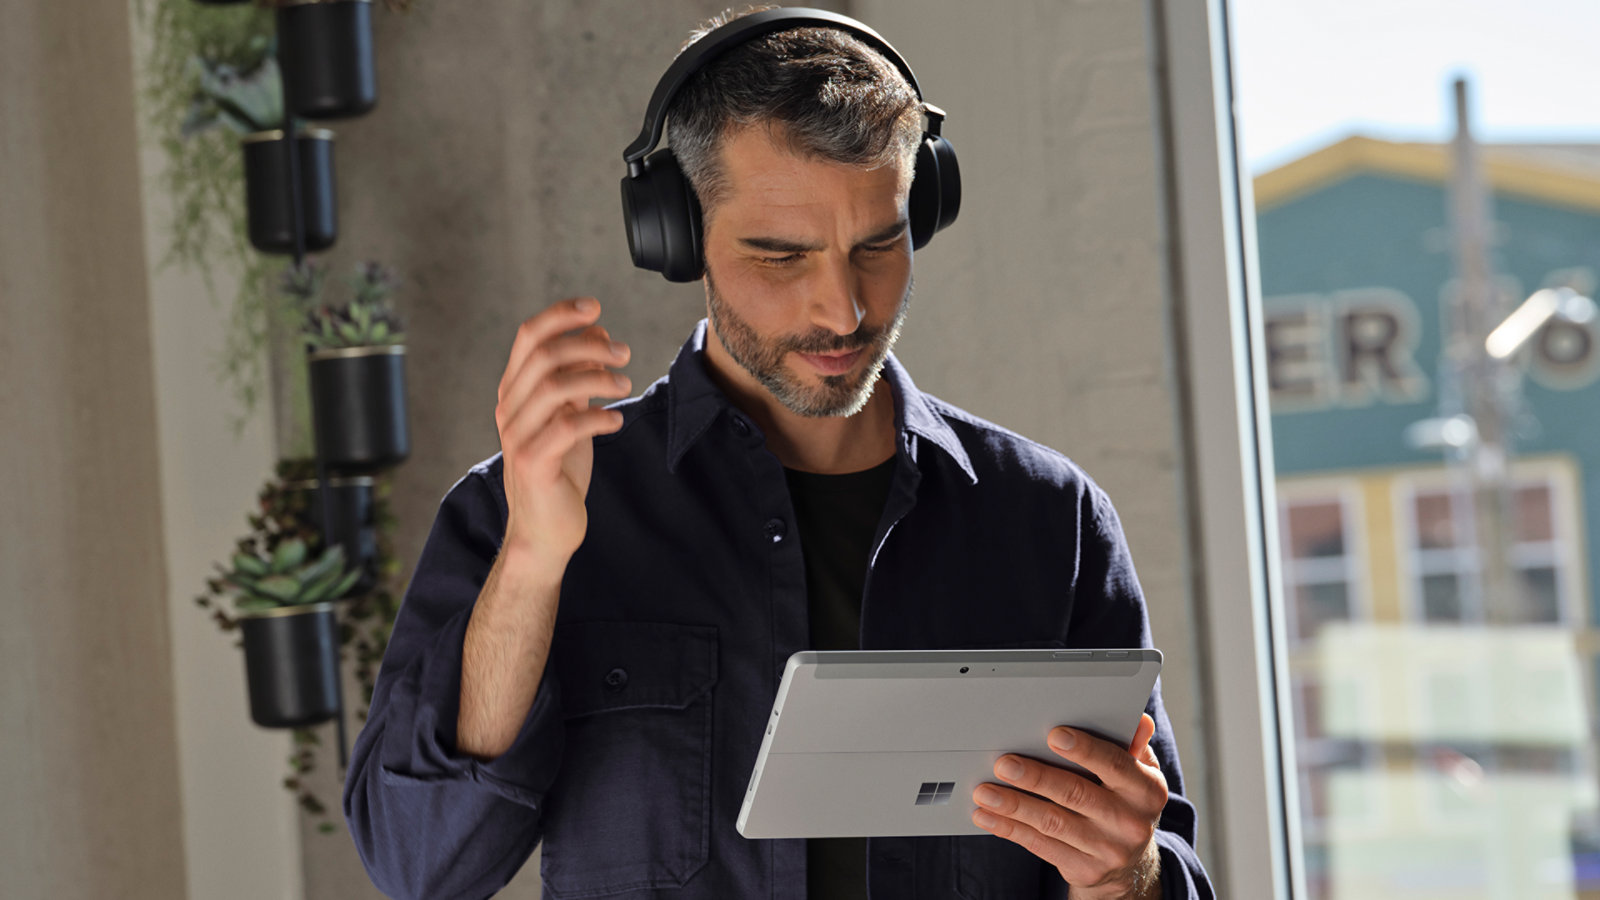 法人向け Surface Go 4 を使用してビデオ通話に参加するヘッドホンを着用した人物。